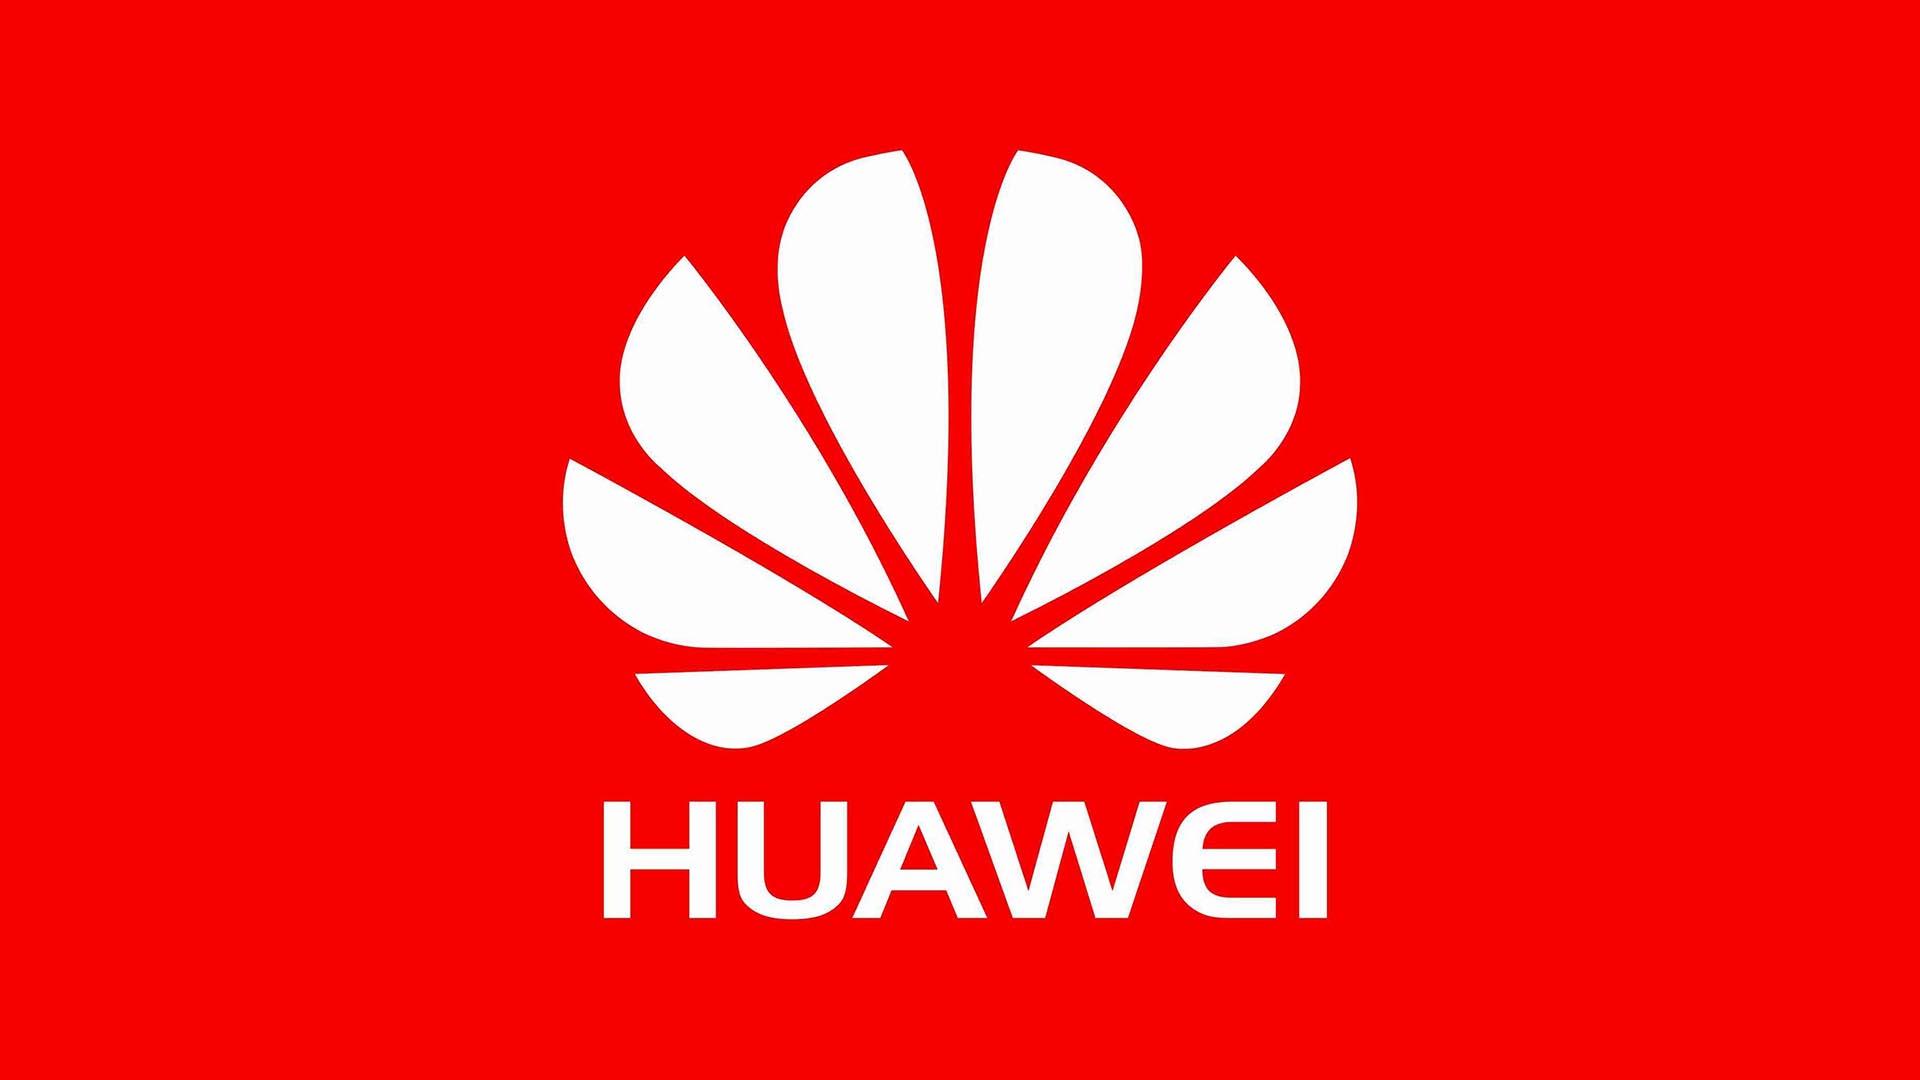 Αποβλήθηκε από τον χώρο της κυβερνοασφάλειας η Huawei